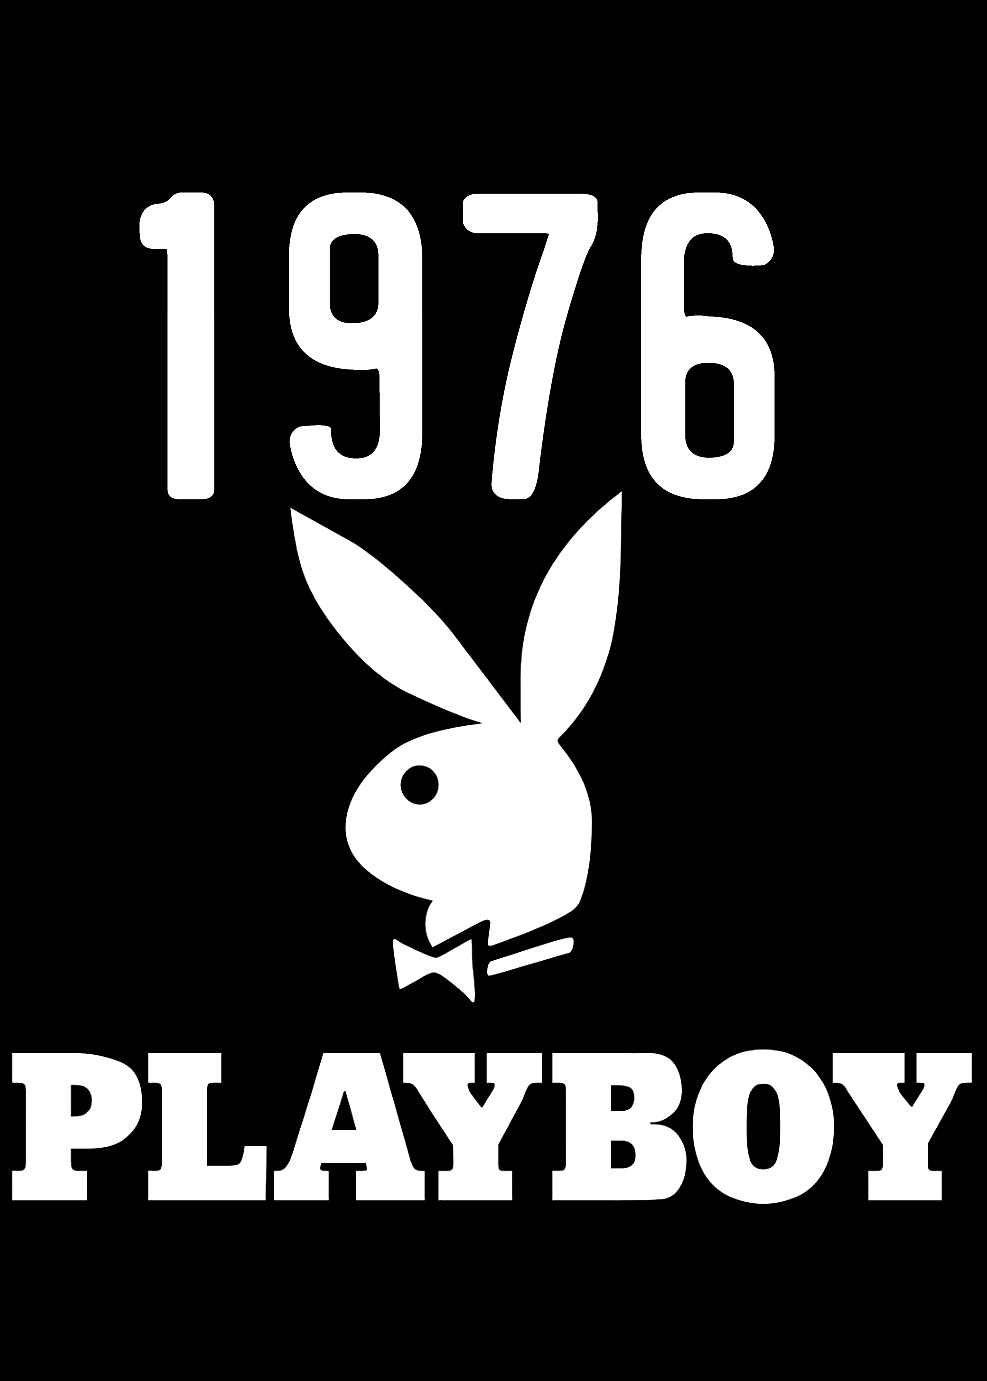 Playboy Magazin Am Besten Von 1976 Wunderbar Mega Pack #40525875